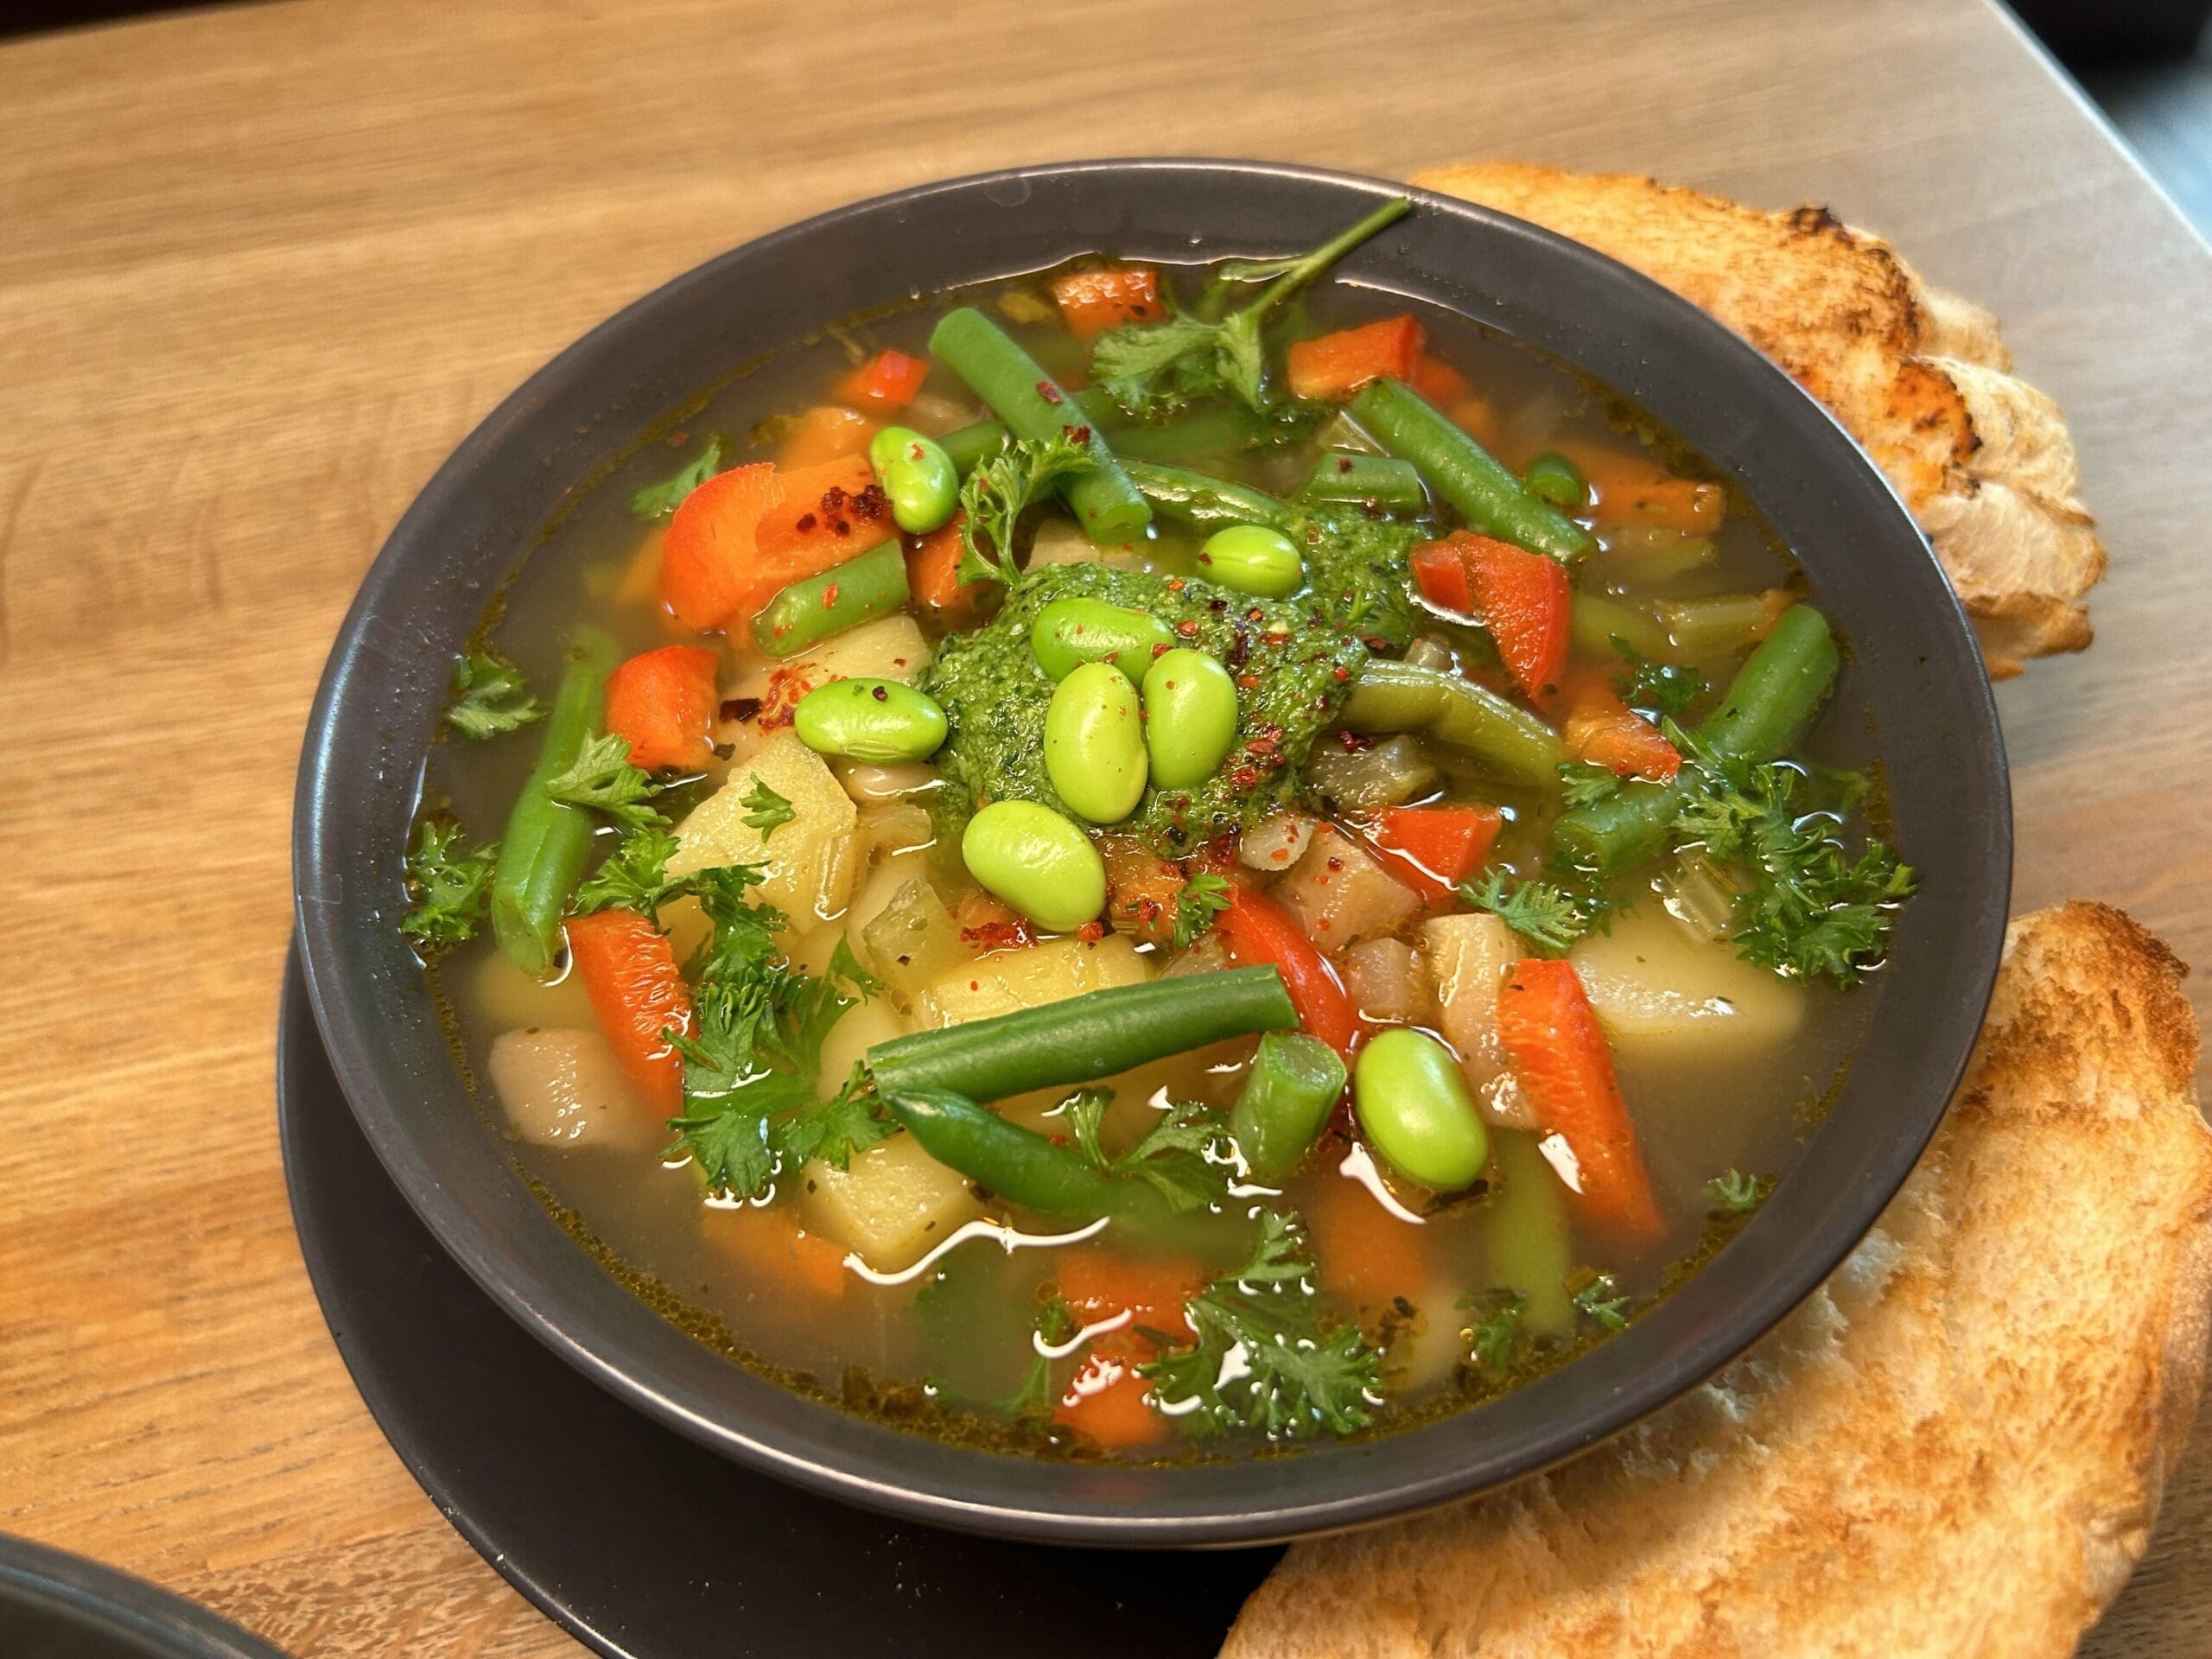 Soupe au Pistou - provenzalische Gemüsesuppe.© Vanessa Müller